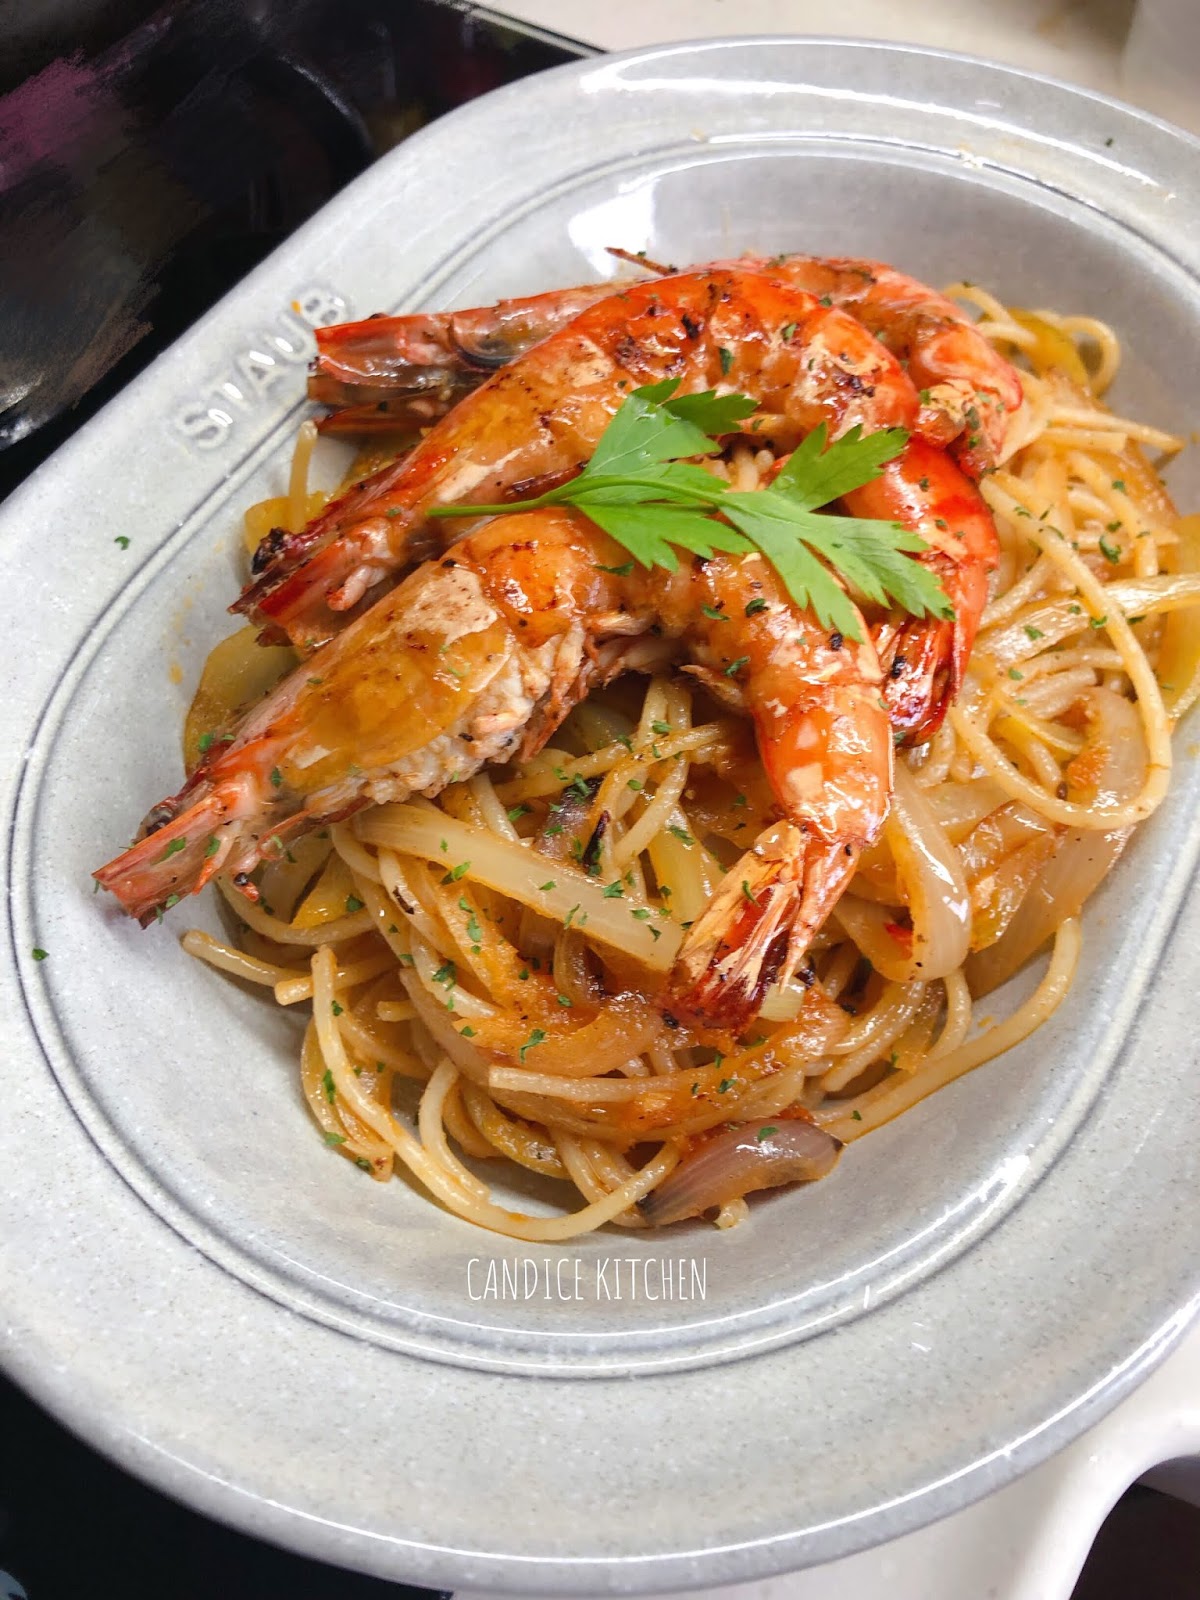 手執刀 The Cooking Surgeon: 龍蝦汁海鮮意粉 Seafood pasta with homemade lobster sauce